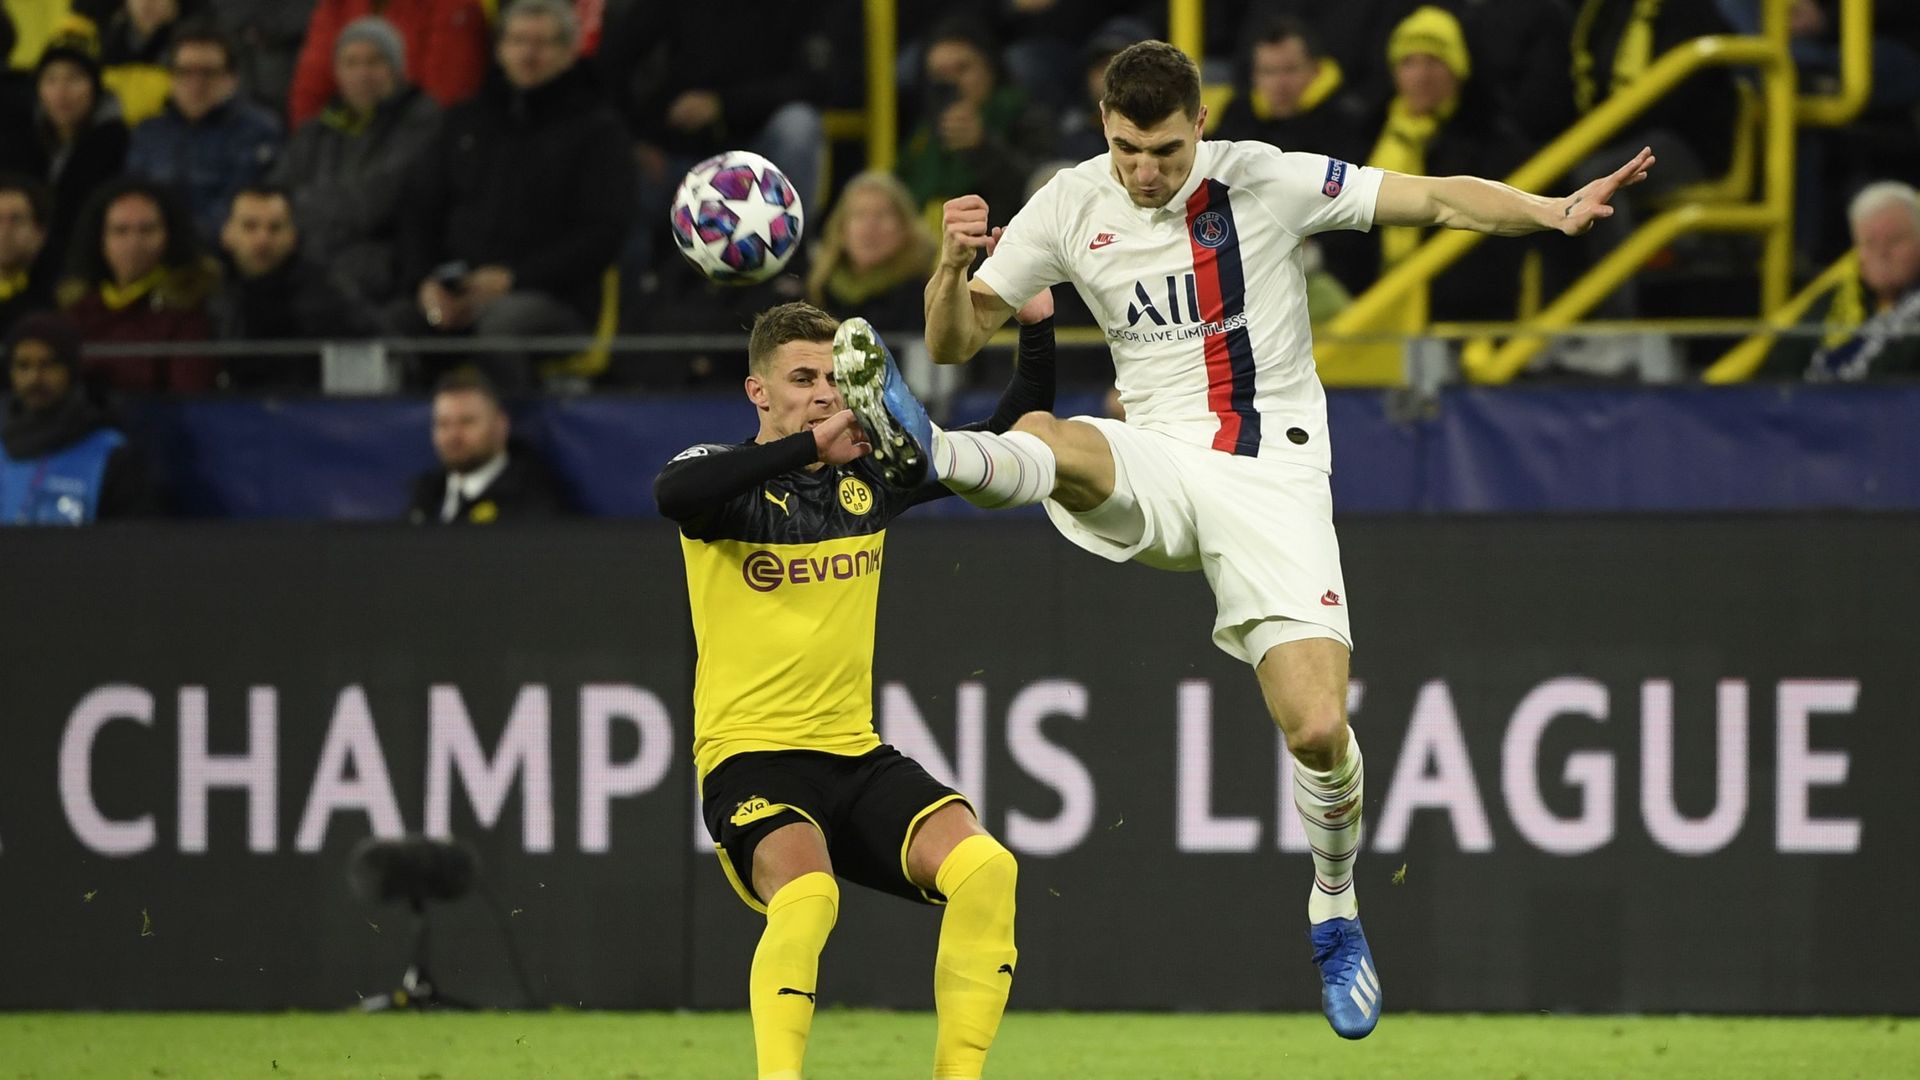 Adversaires cette année en Champions league, Thorgan Hazard et Thomas Meunier seront équipiers à Dortmund la saison prochaine 